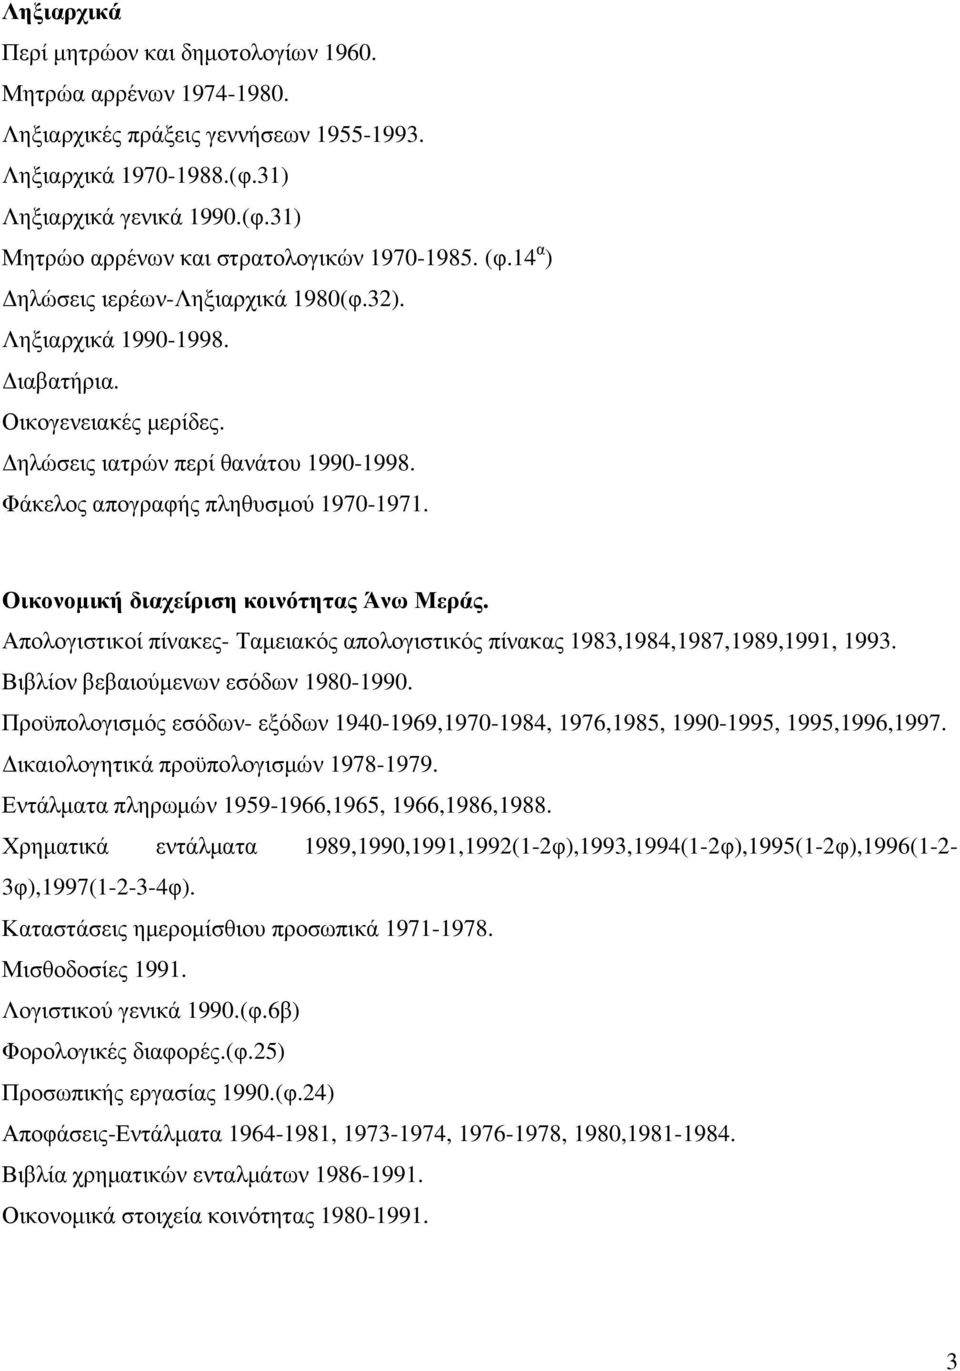 Οικονοµική διαχείριση κοινότητας Άνω Μεράς. Απολογιστικοί πίνακες- Ταµειακός απολογιστικός πίνακας 1983,1984,1987,1989,1991, 1993. Βιβλίον βεβαιούµενων εσόδων 1980-1990.